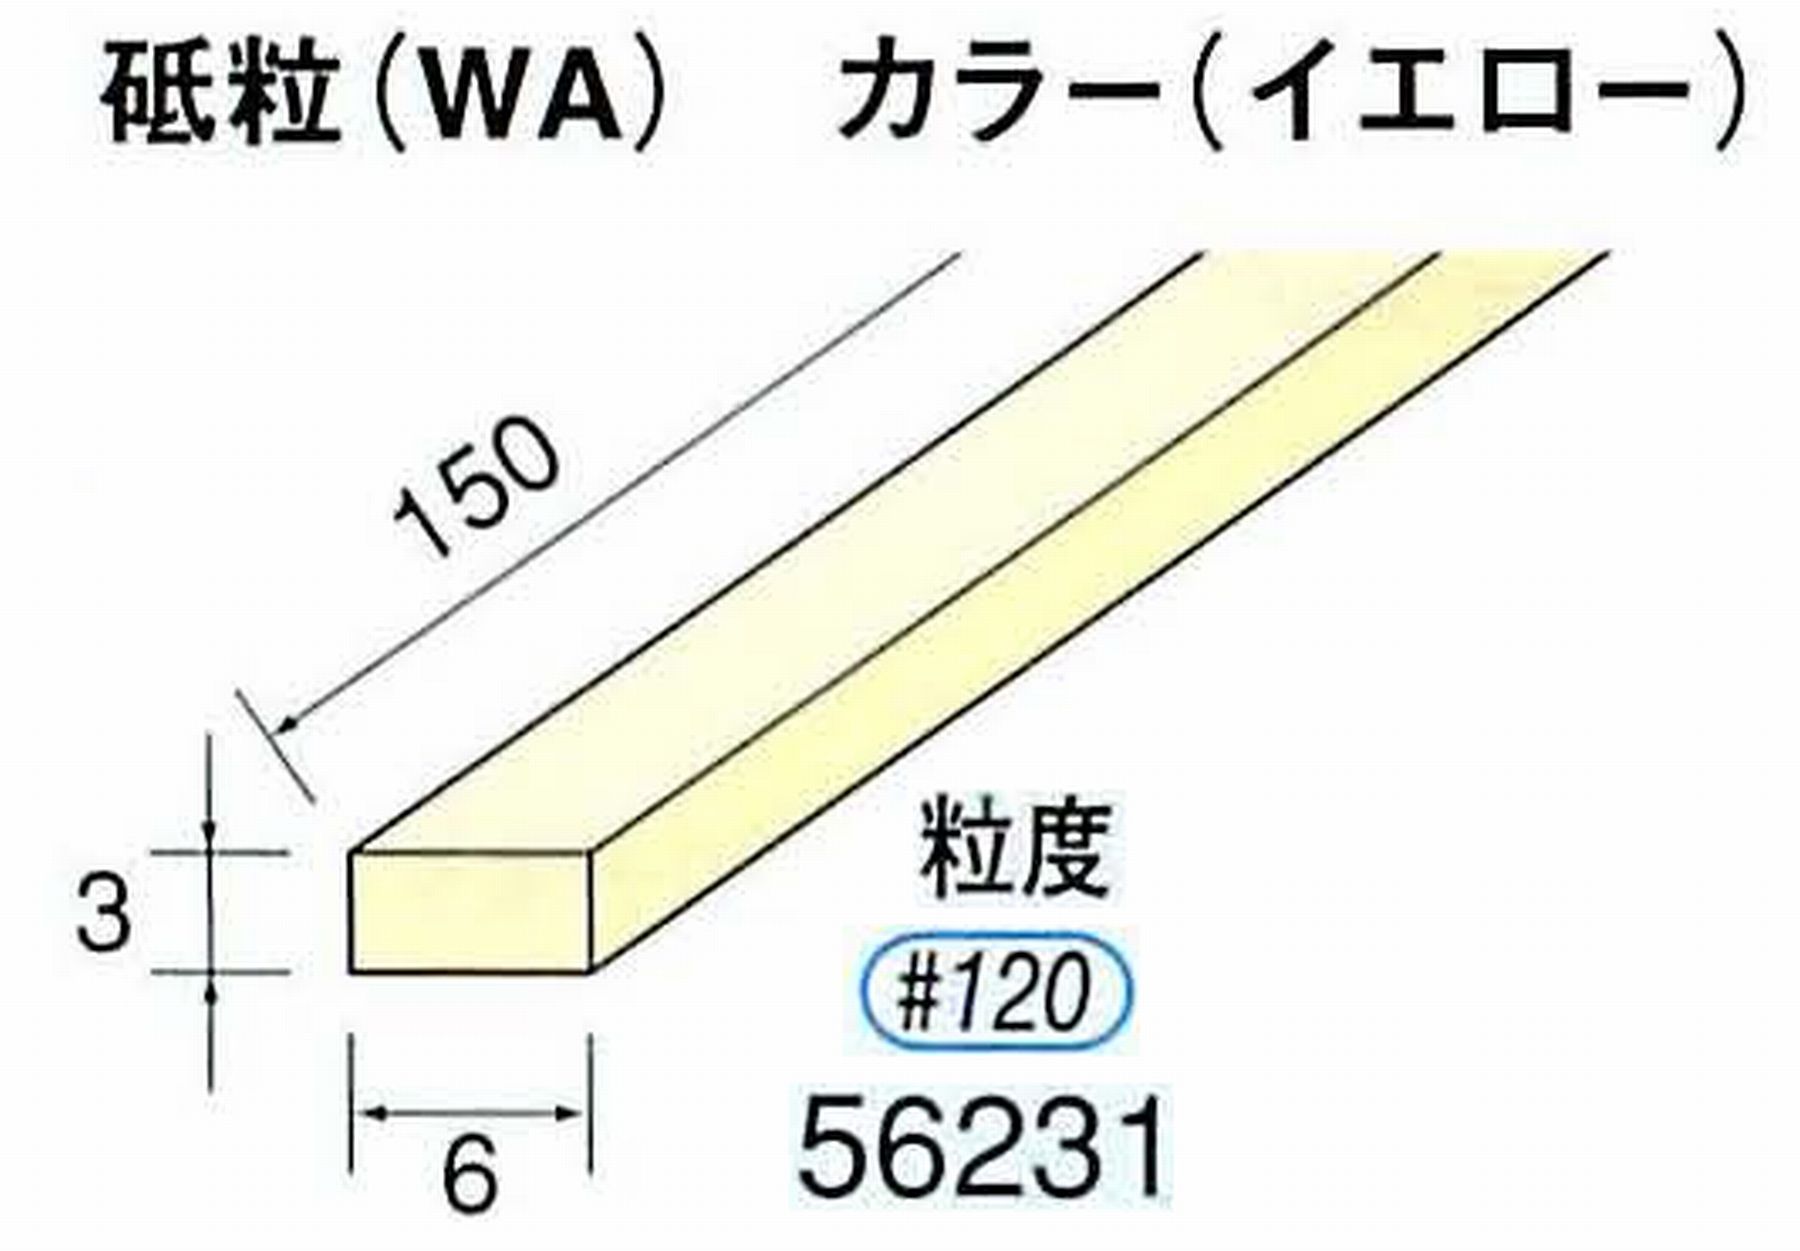 ナカニシ/NAKANISHI スティック砥石 イエロー・フィニッシュシリーズ 砥粒(WA) 56231